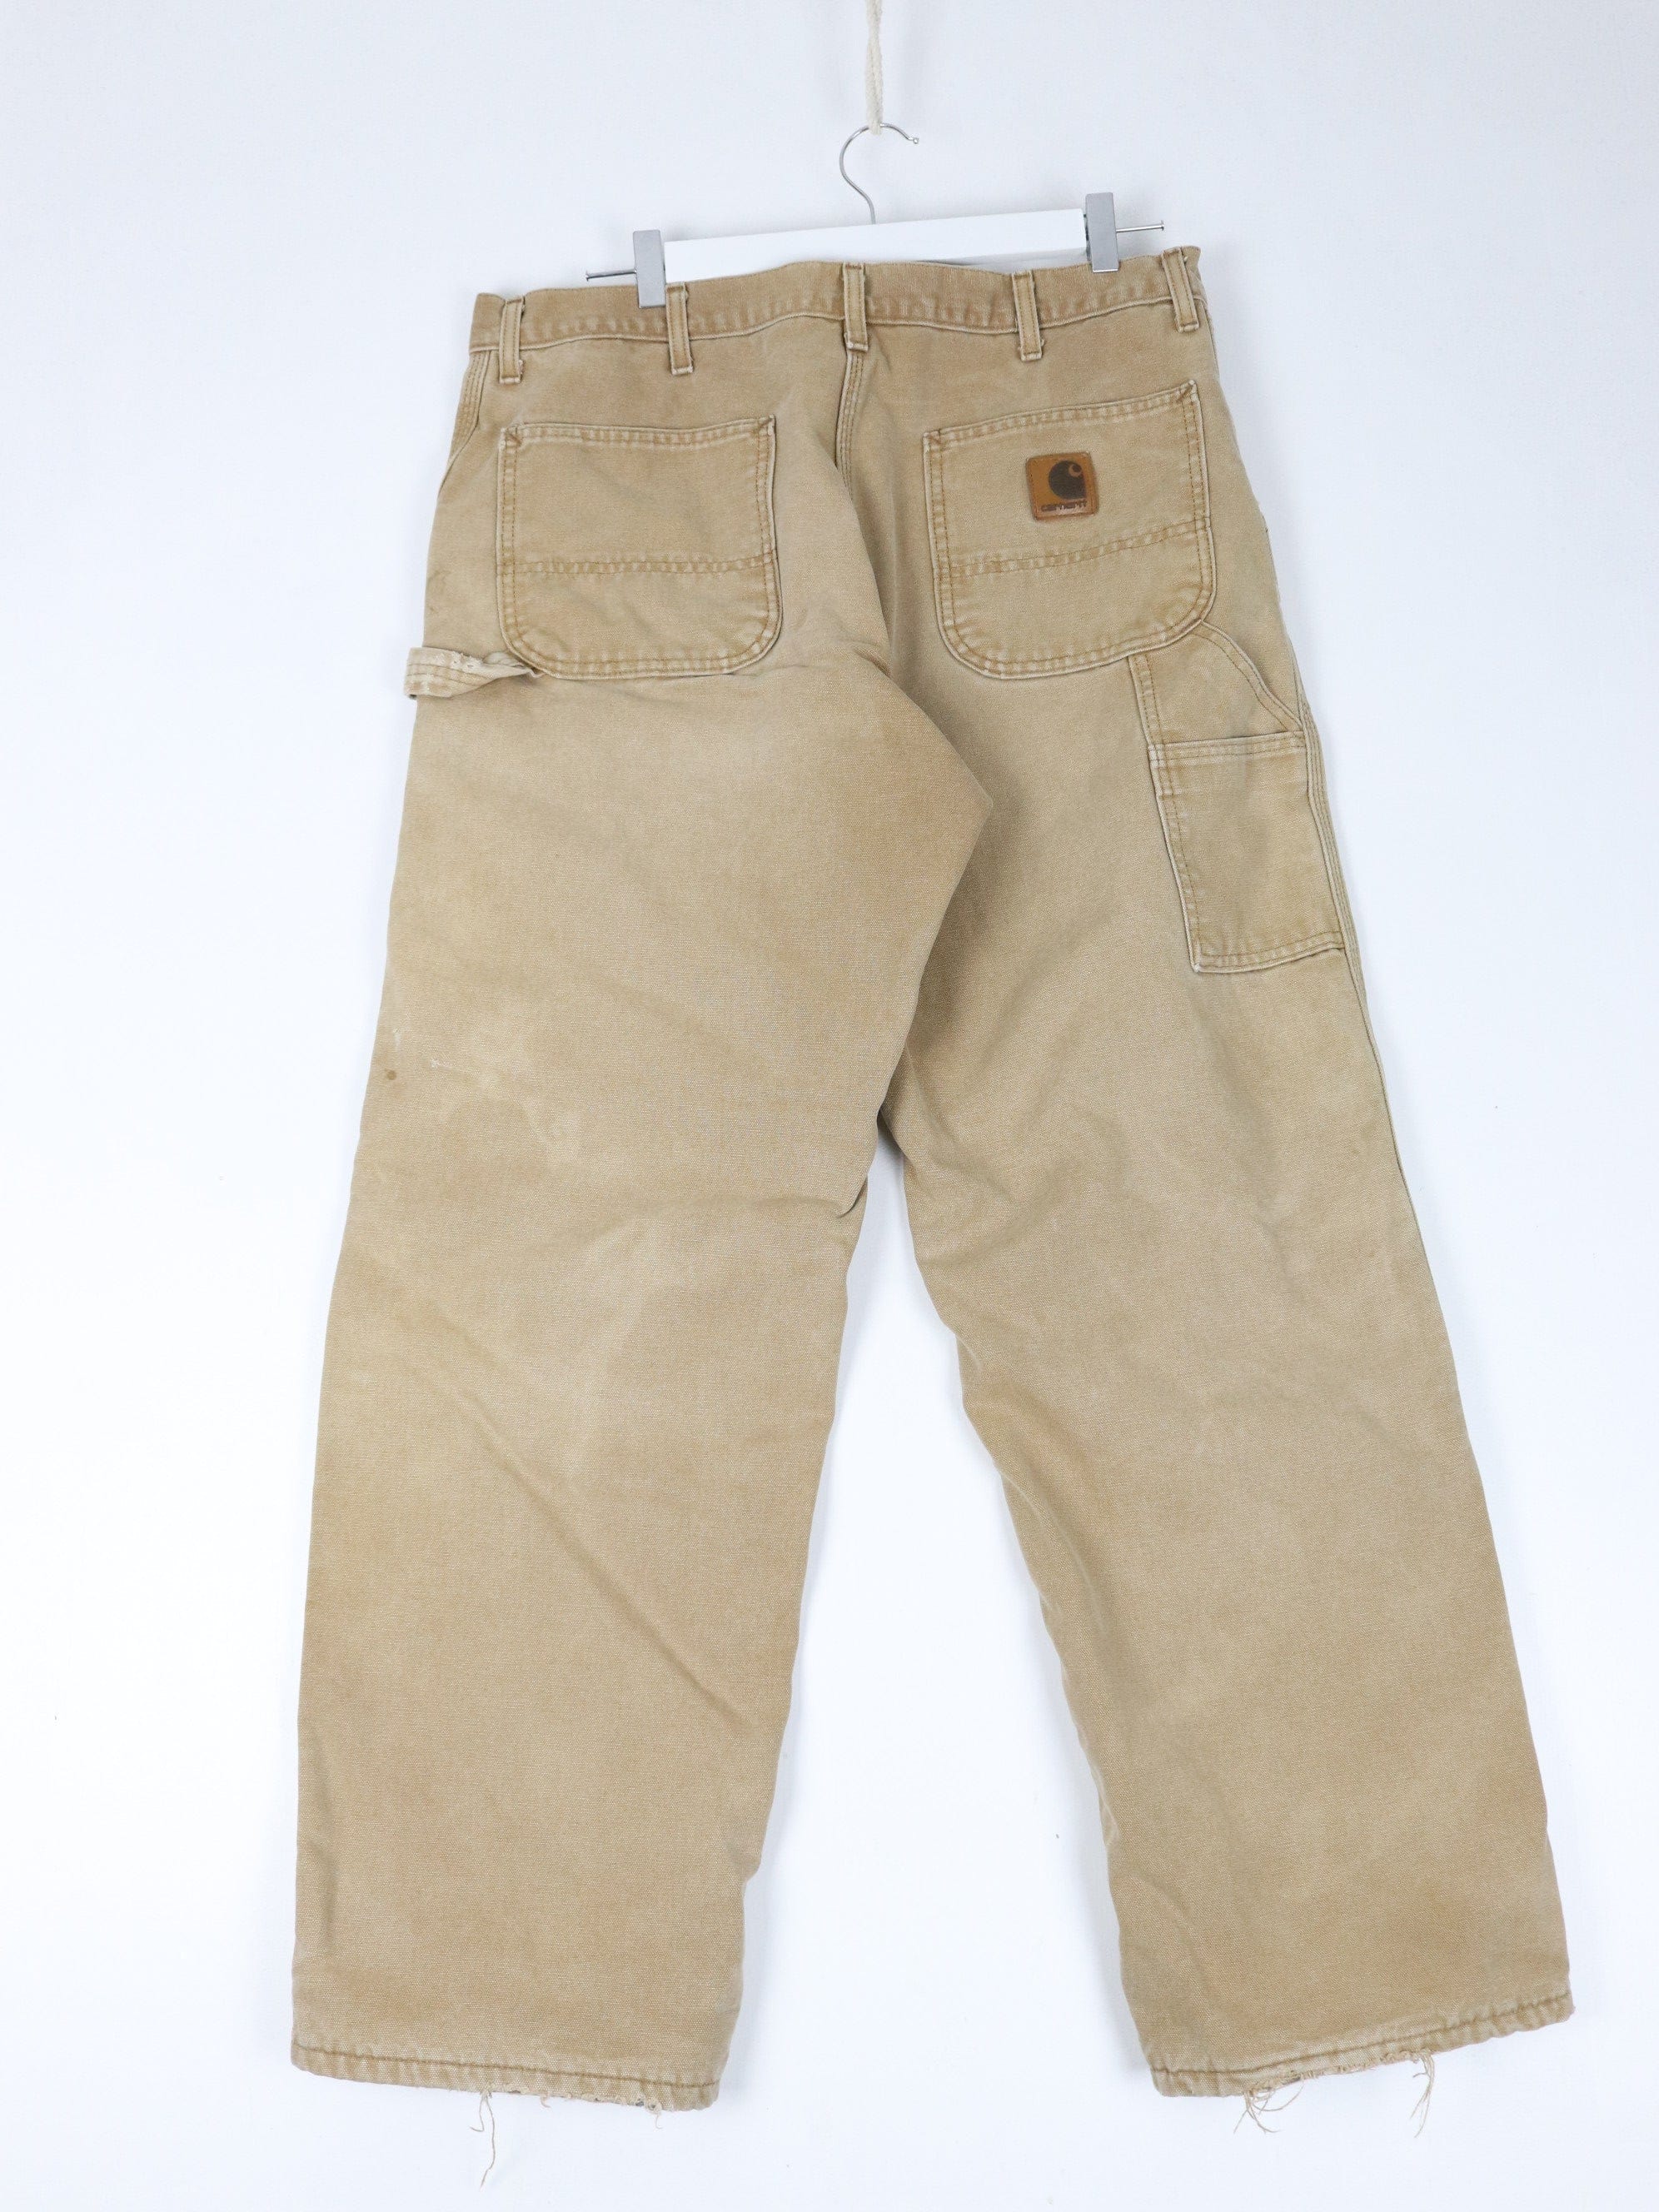 Vintage Carhartt Pants Mens 37 x 30 Brown Work Wear Carpenters Lined